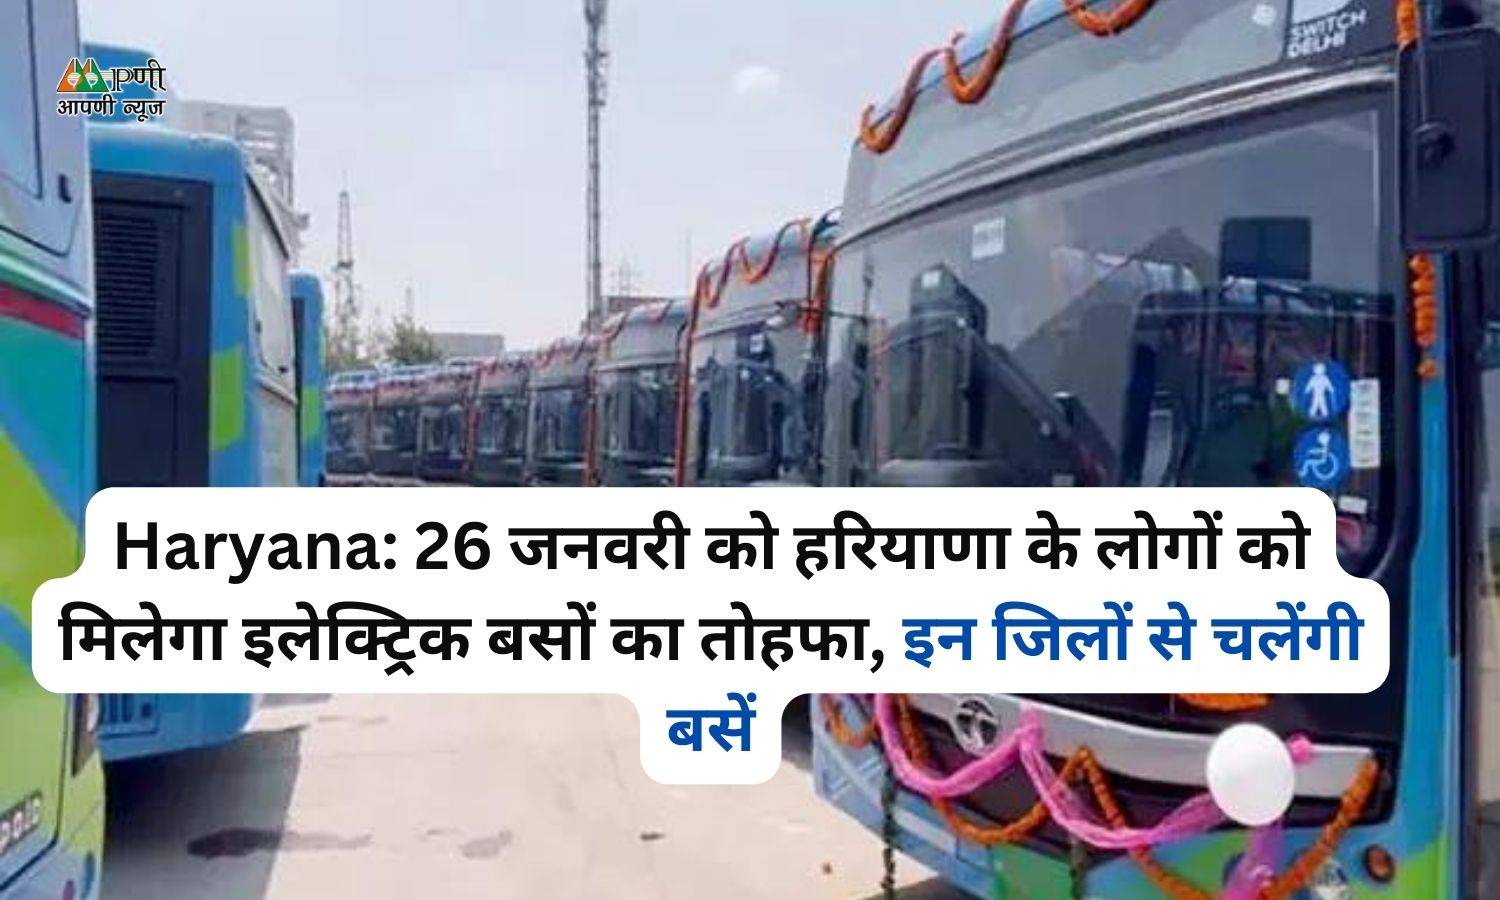 Haryana: 26 जनवरी को हरियाणा के लोगों को मिलेगा इलेक्ट्रिक बसों का तोहफा, इन जिलों से चलेंगी बसें